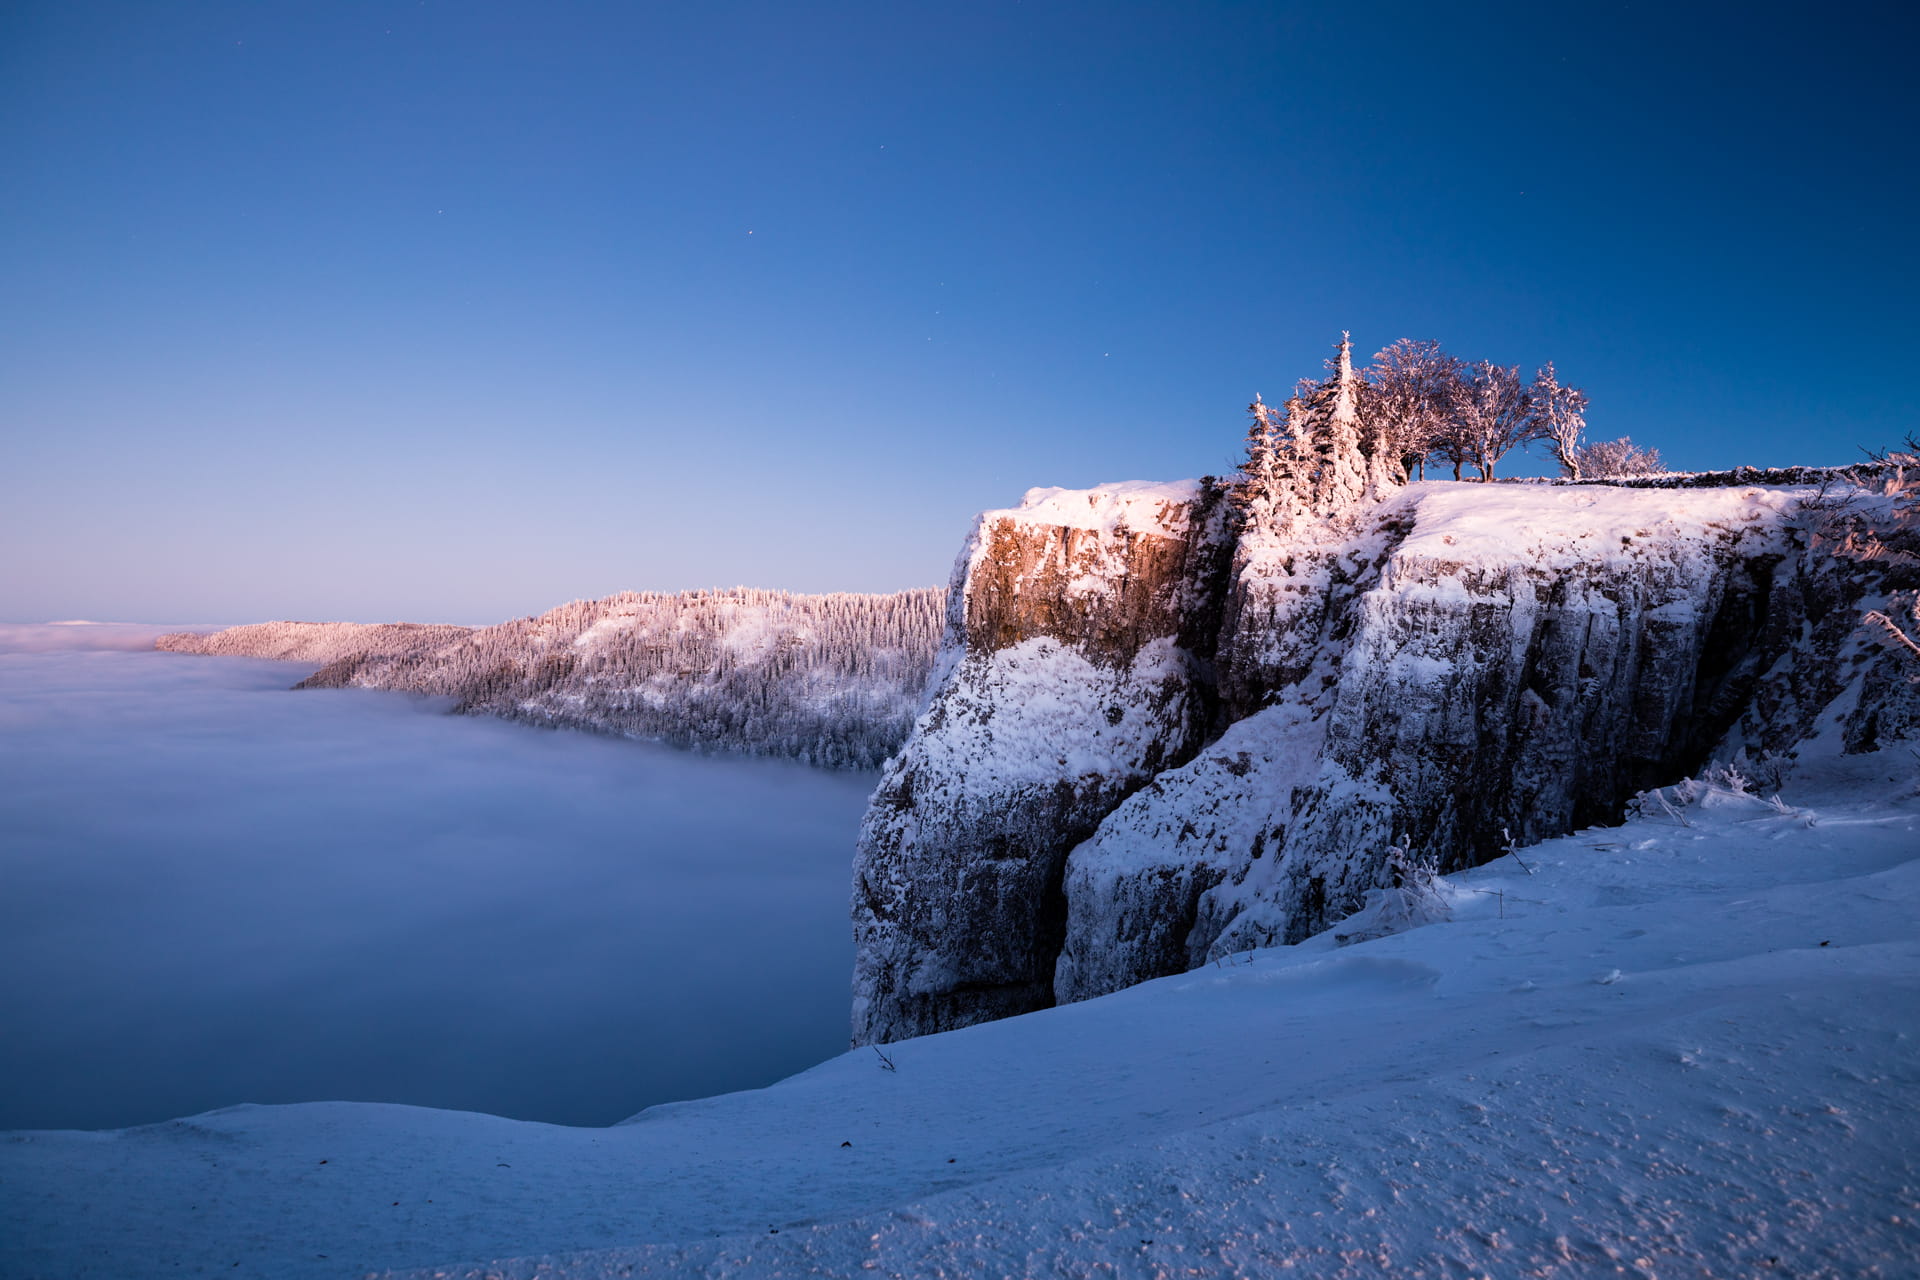 Man steht nahe am Abgrund des Creux du Van. Es ist Winter und der Boden sowie die schroffen Klippen rechts im Bild sind schneebedeckt. Man hat eine weite Aussicht: rechts zieht sich die Gebirgskette weiter durchs Bild, geradeaus blickt man auf ein Nebelmeer.